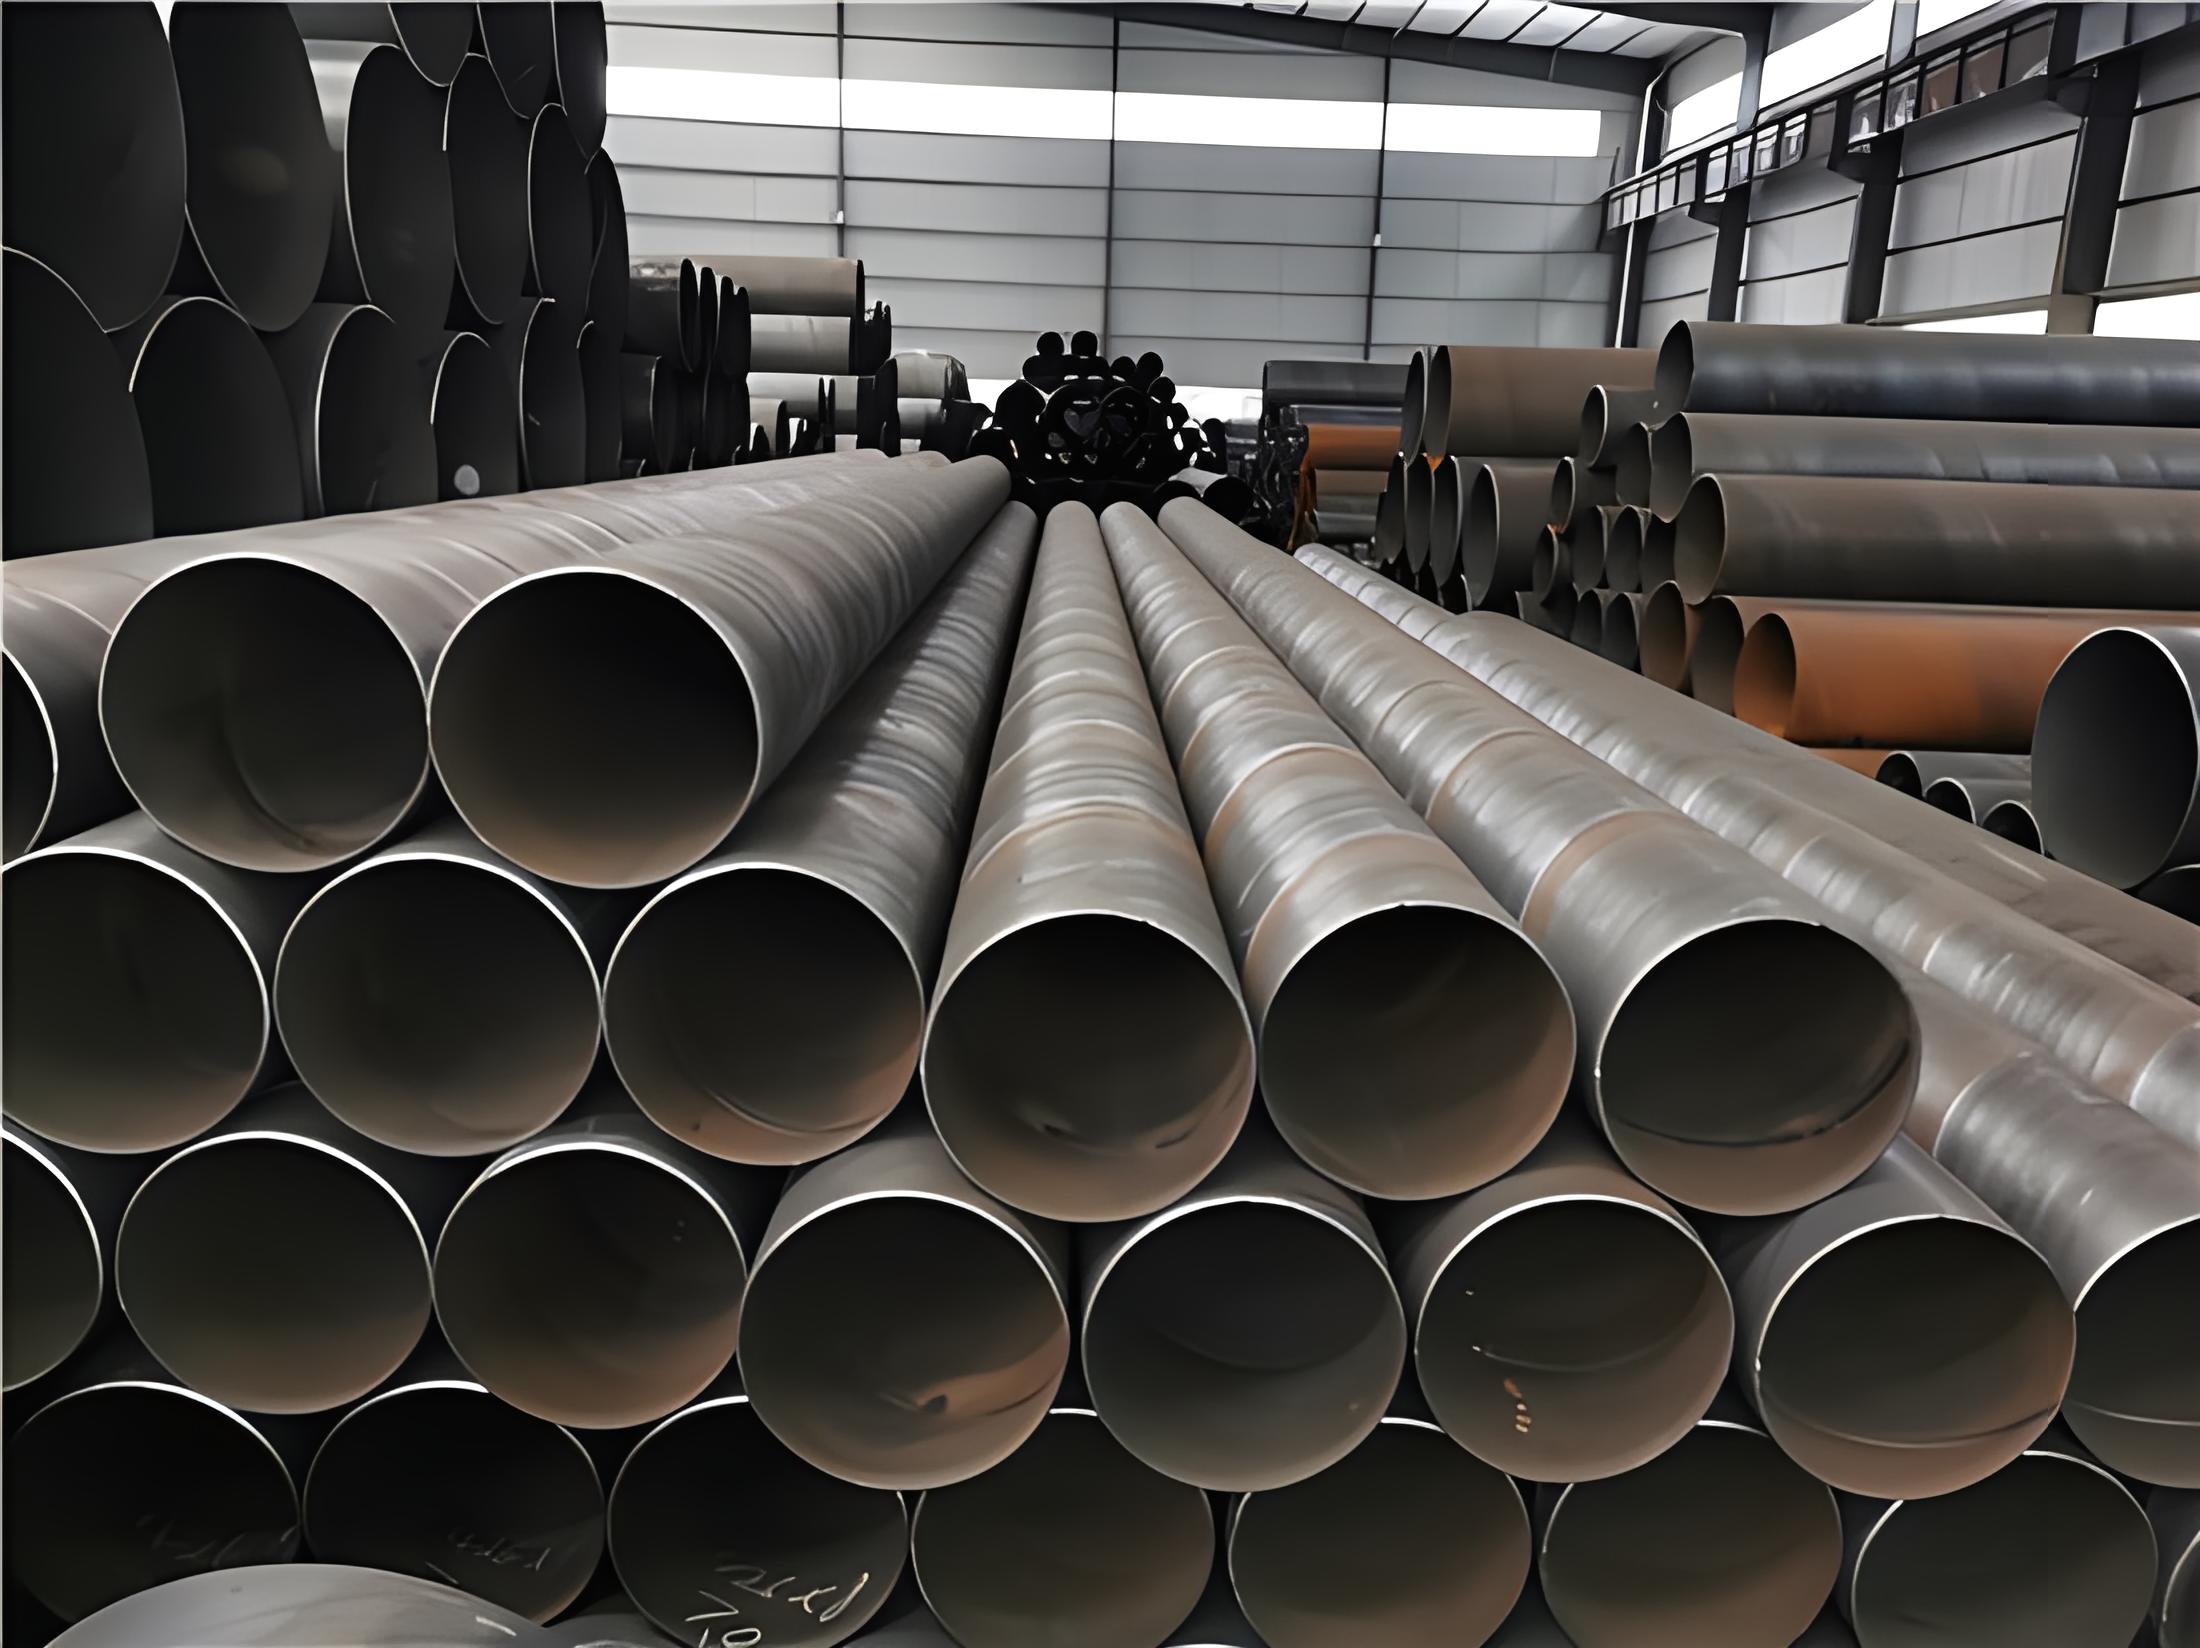 萍乡螺旋钢管现代工业建设的坚实基石